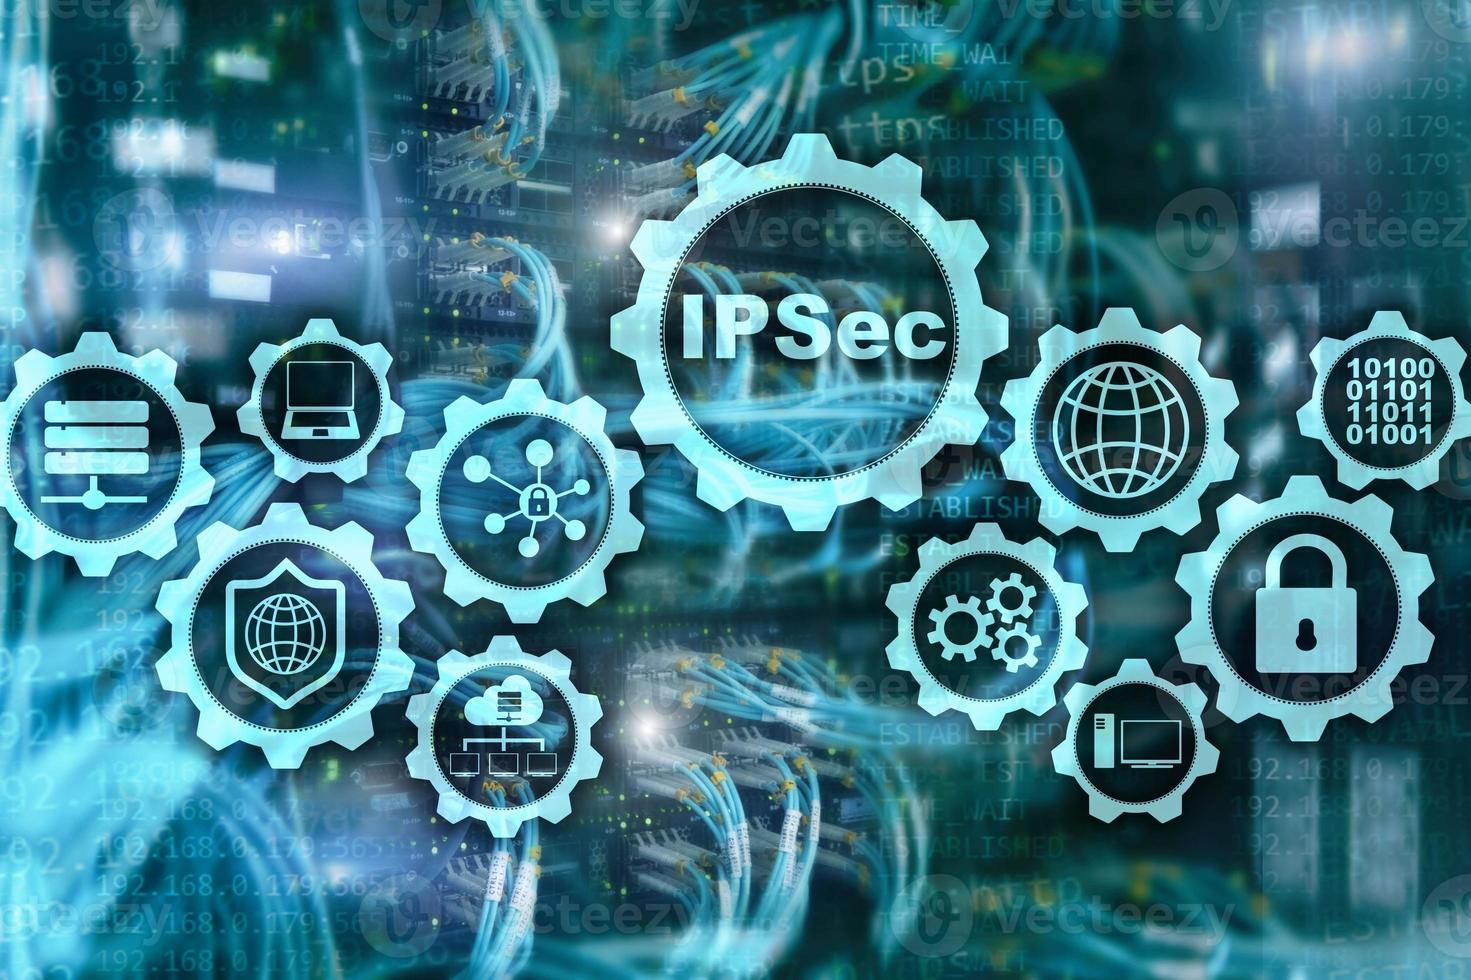 seguridad ip. protocolos de protección de datos. ipsec. concepto de red de internet y protección foto